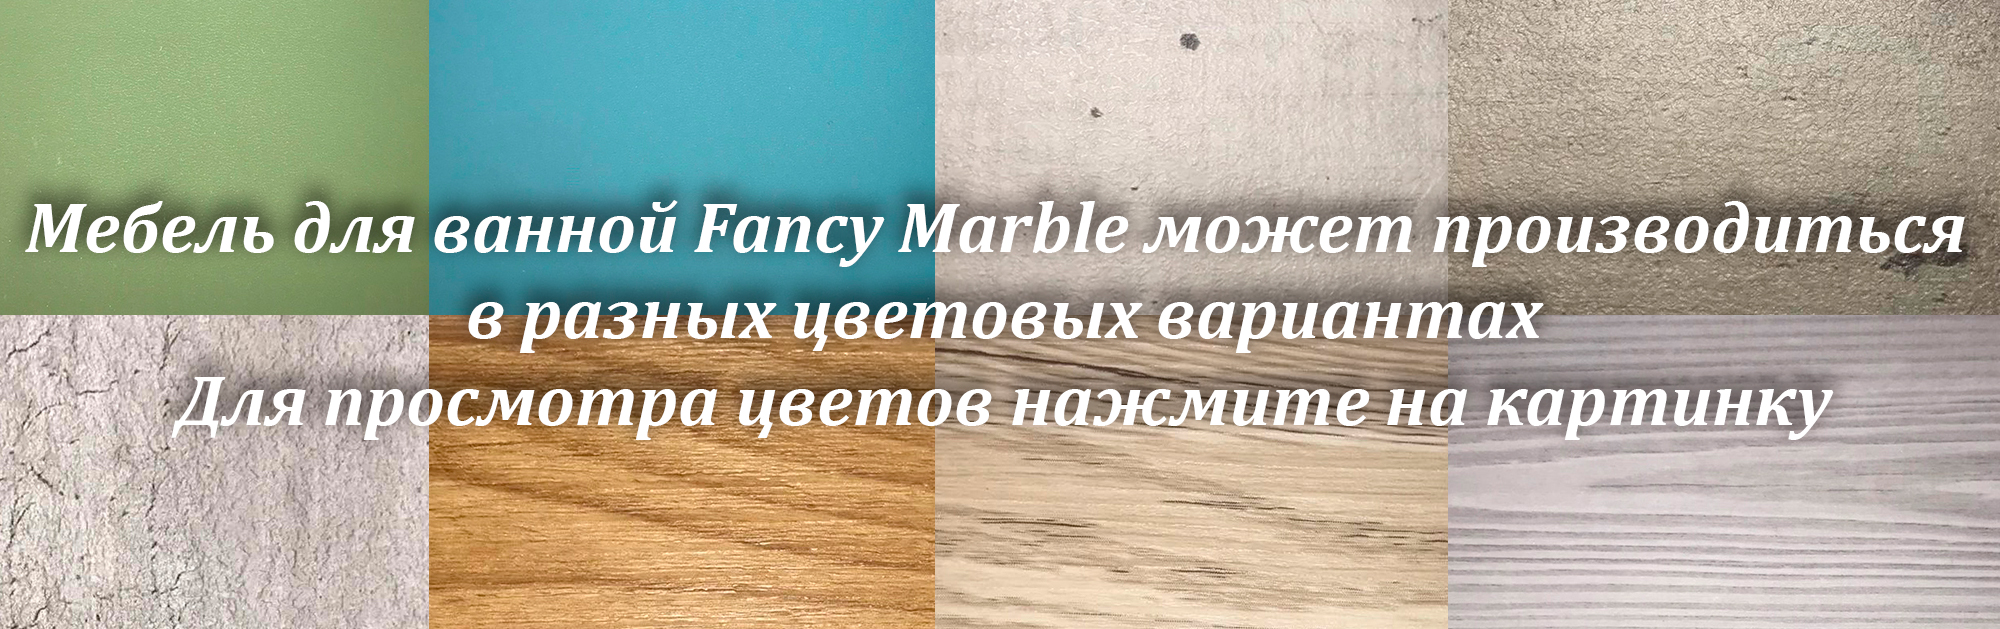 Цвета мебели Fancy Marble - livron mini